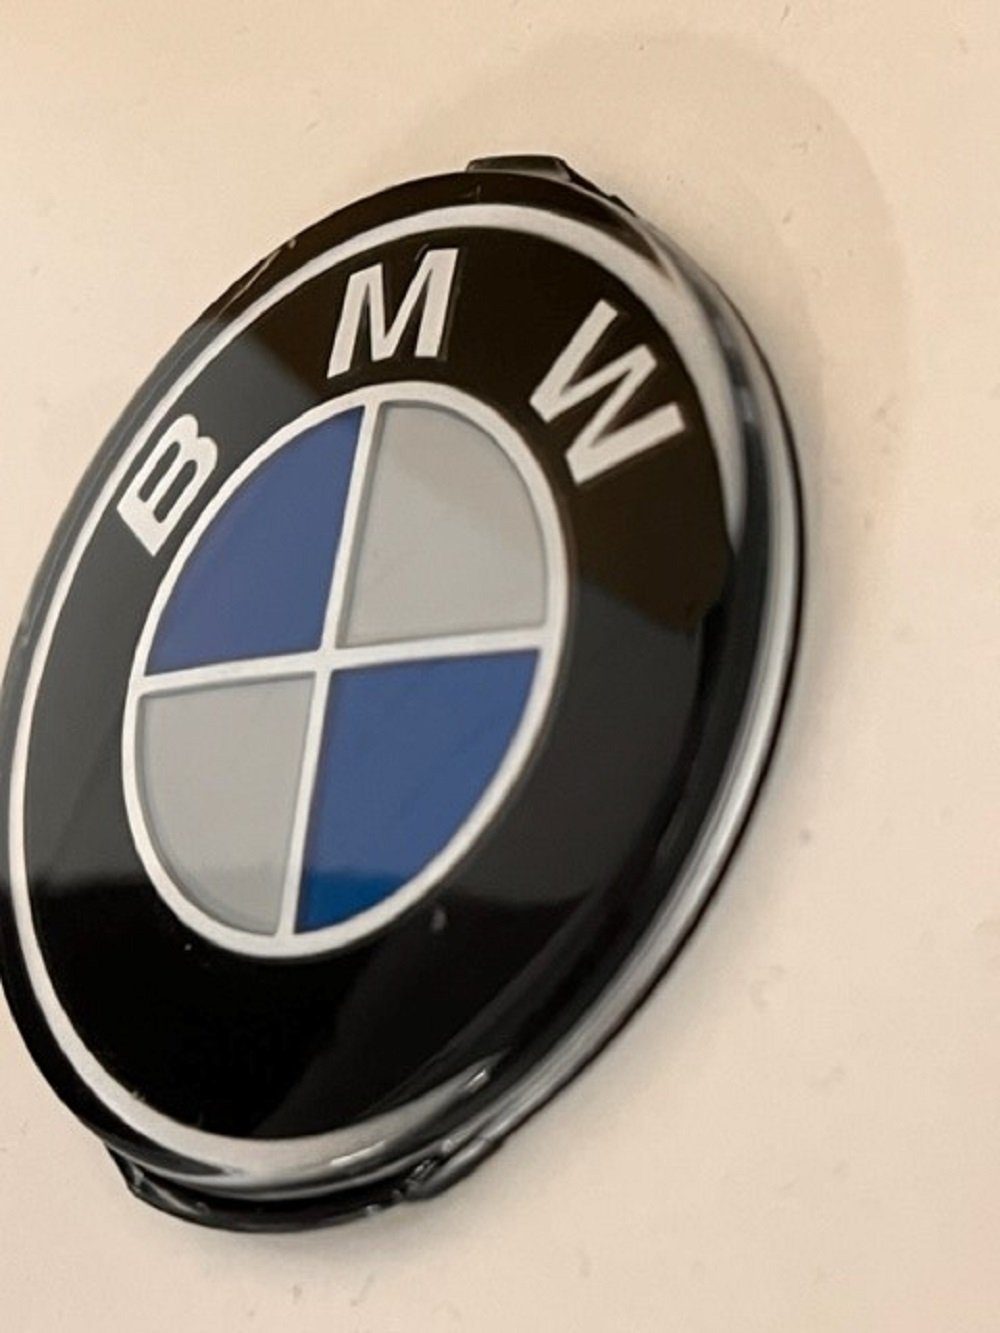 SCHLÜSSELANHÄNGER – BMW – Emblem ältere Ausführung (NOS